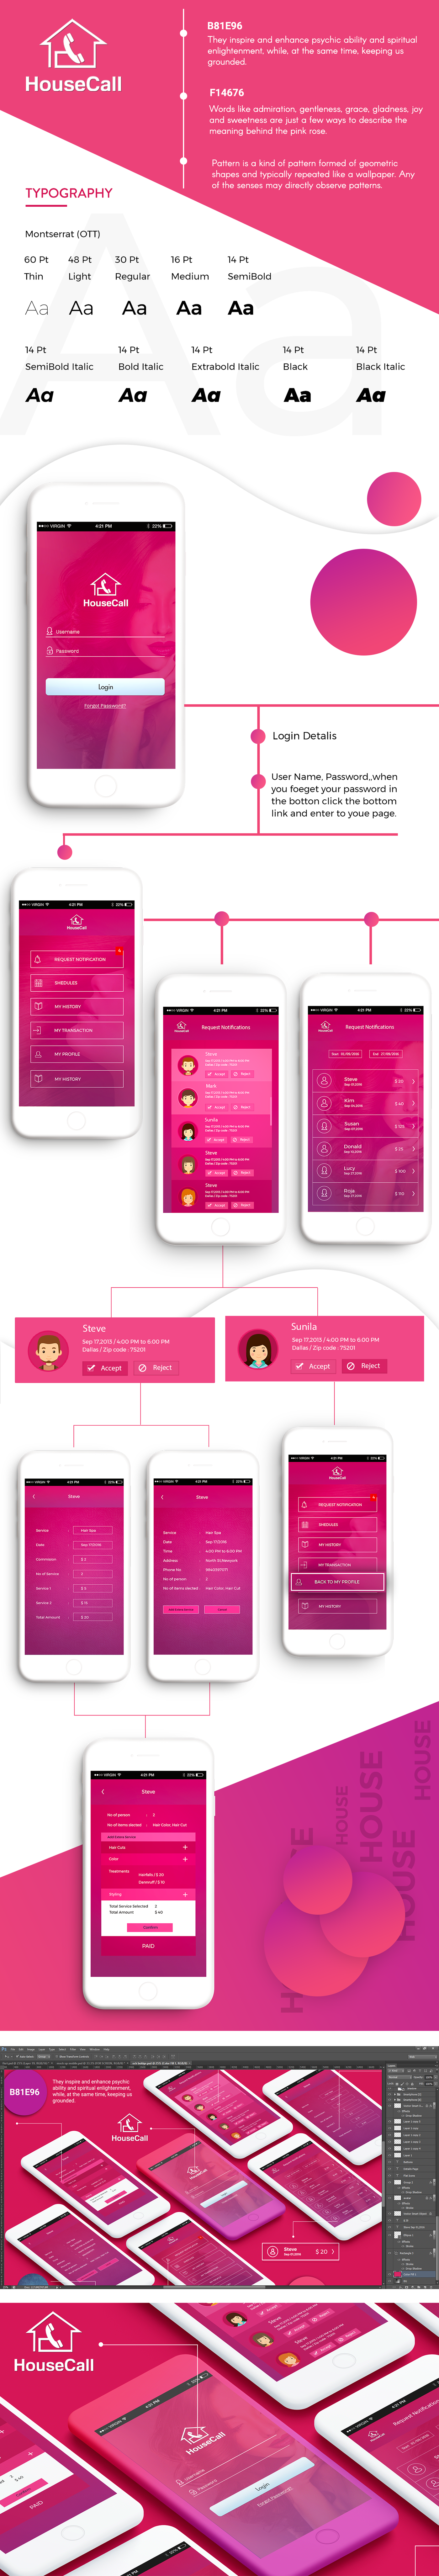 ui design Mobile app Creative Design banner design Creative Design Website Design branding  mockup design UX design